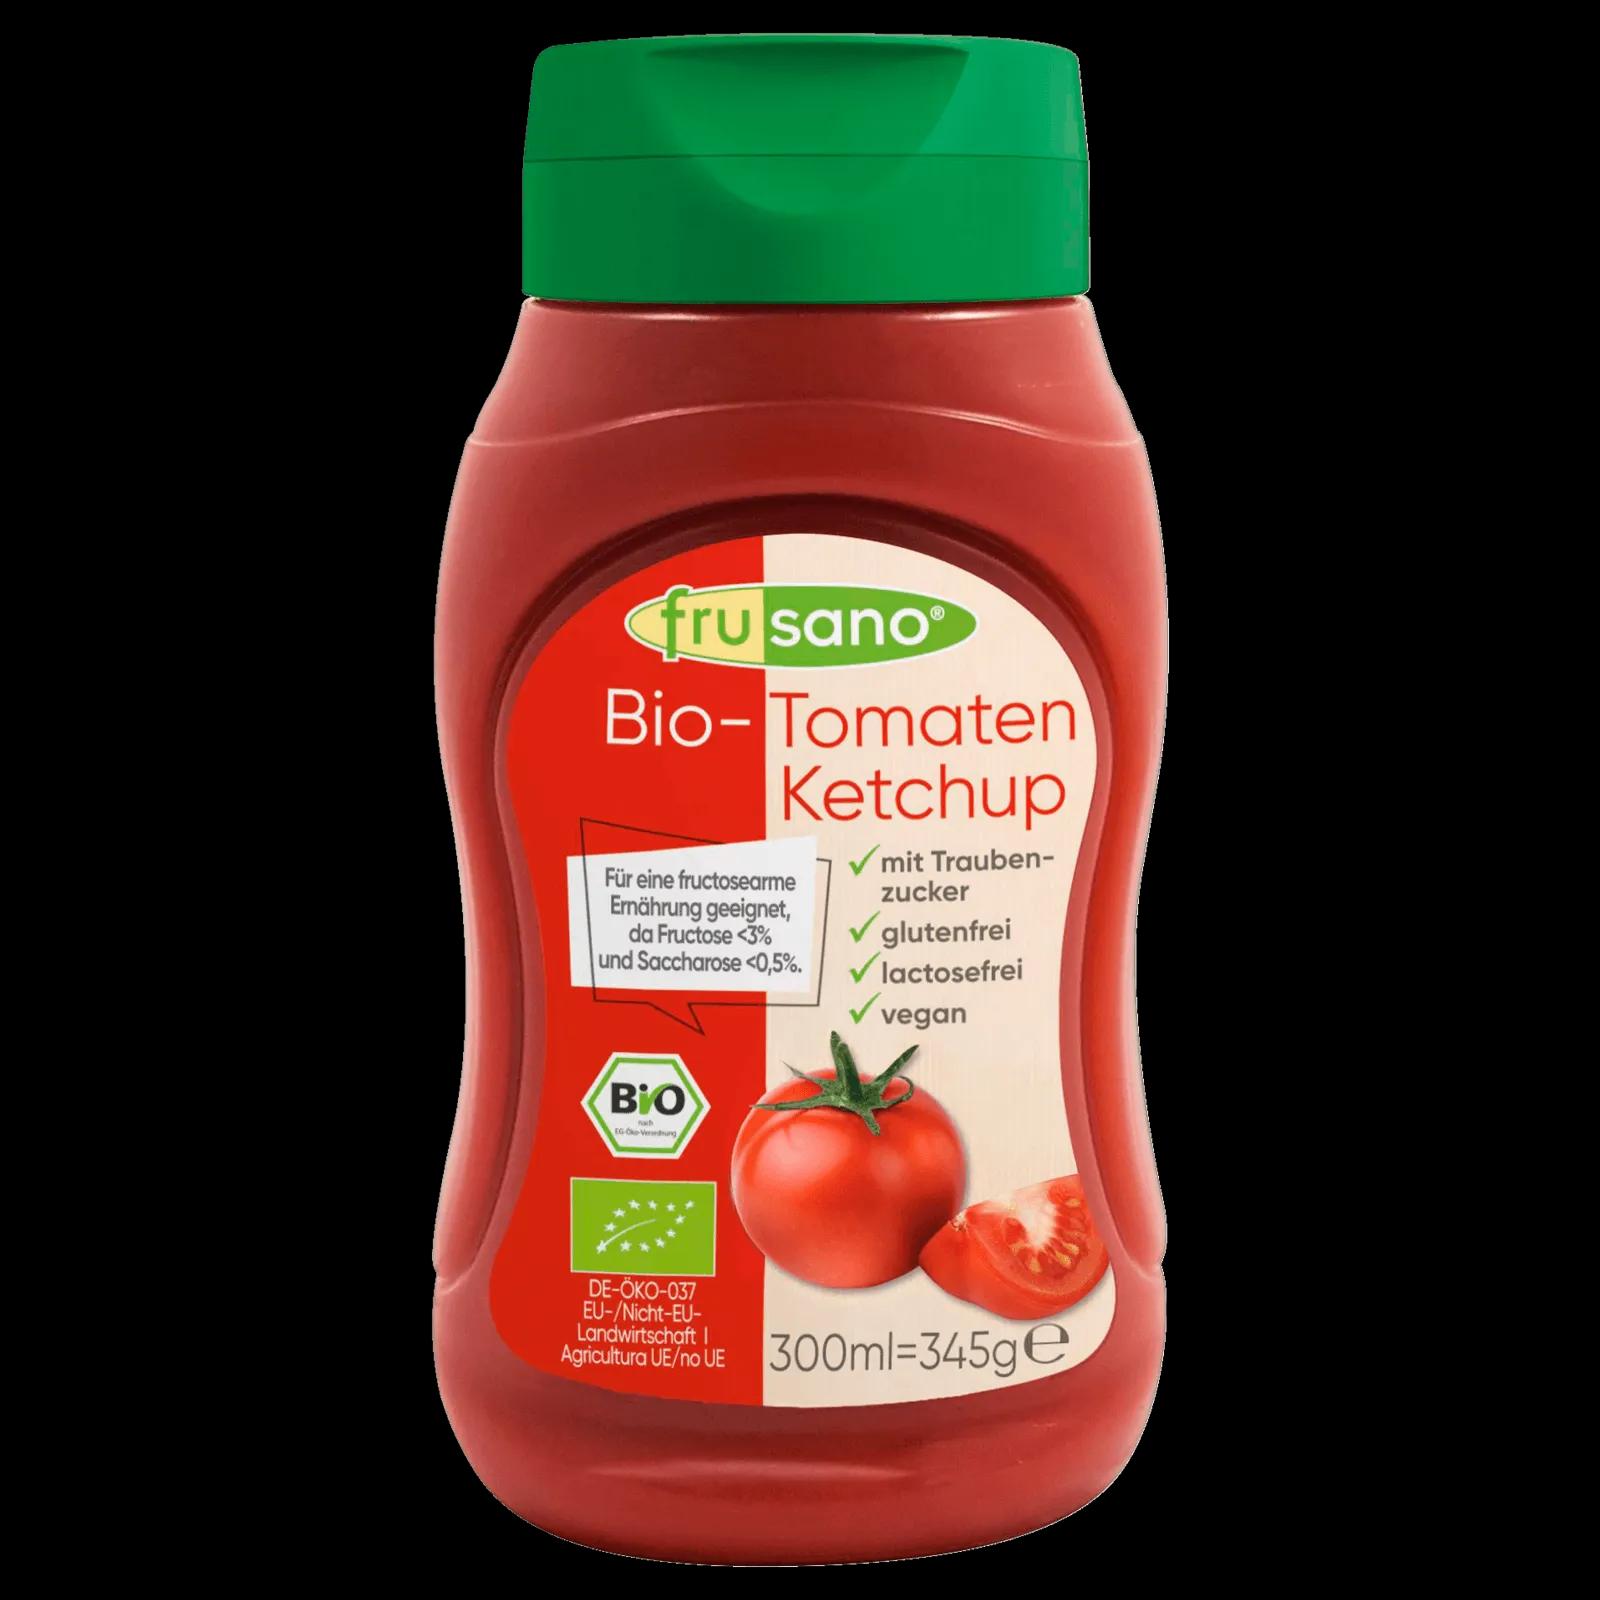 Frusano Bio Tomatenketchup 300ml bei REWE online bestellen!